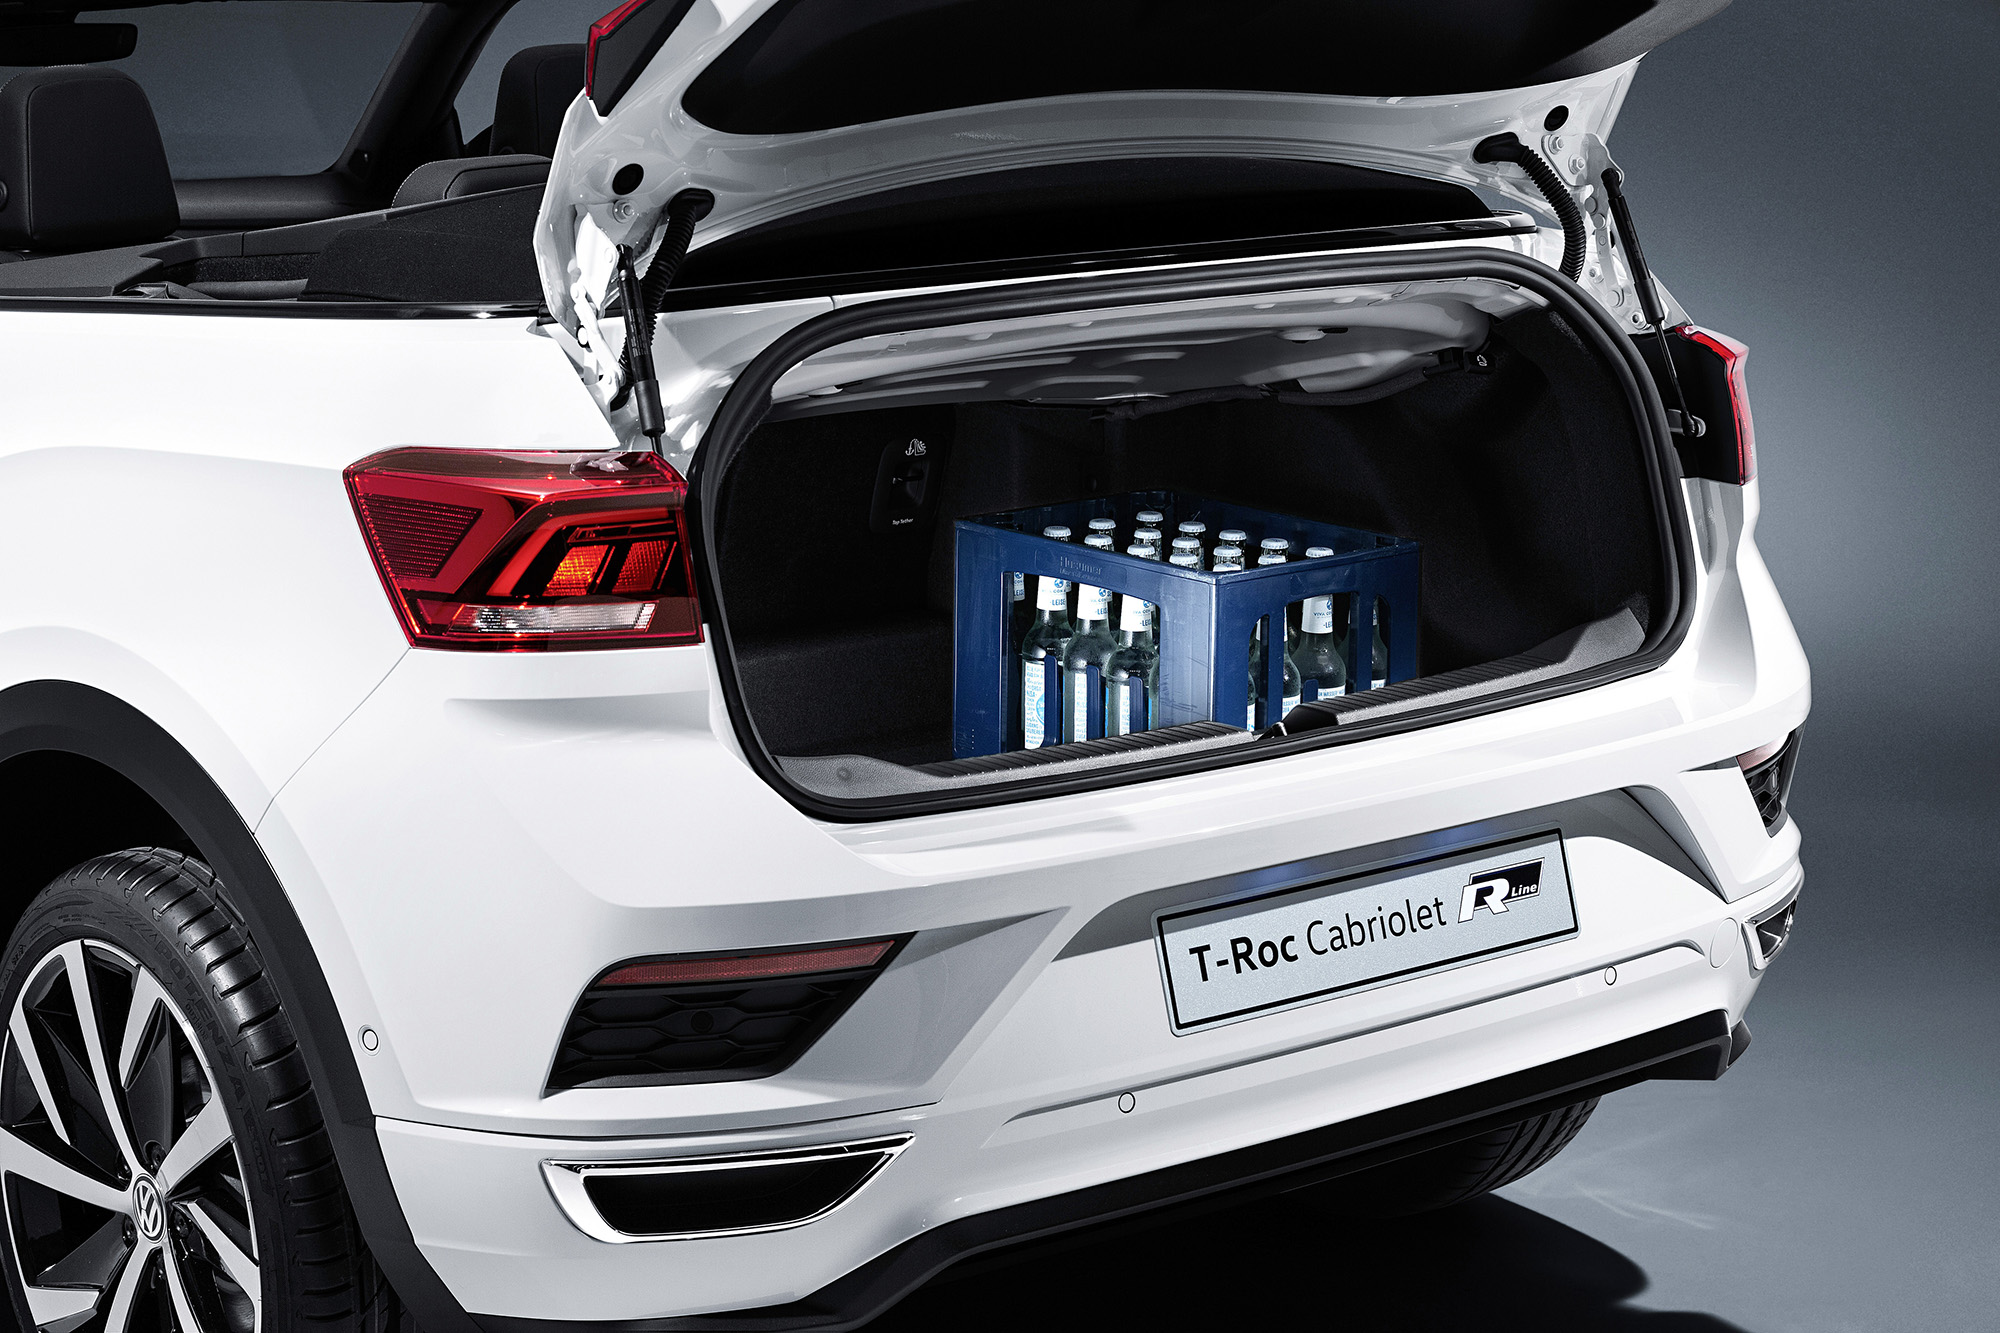 2020 VW T-Roc Cabriolet Kofferraum Volumen Luggage Trunk boot